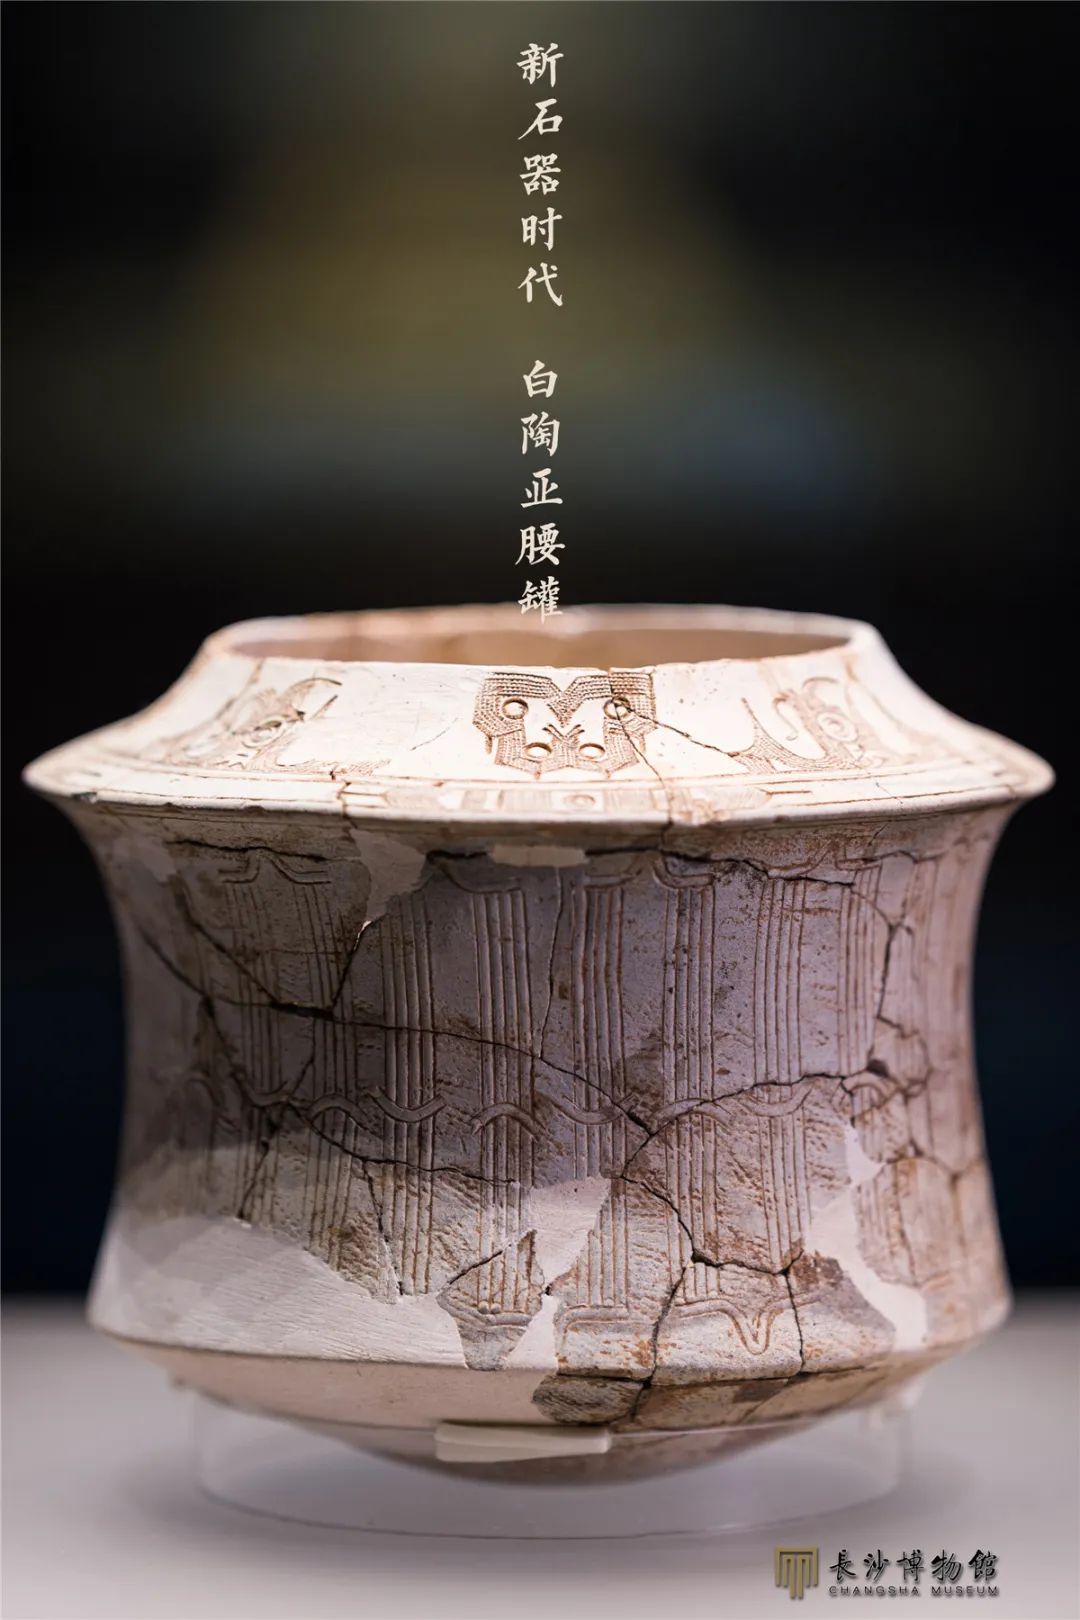 白陶亚腰罐 新石器时代高庙文化（距今约7000年） 桂阳千家坪遗址出土 湖南省文物考古研究所藏